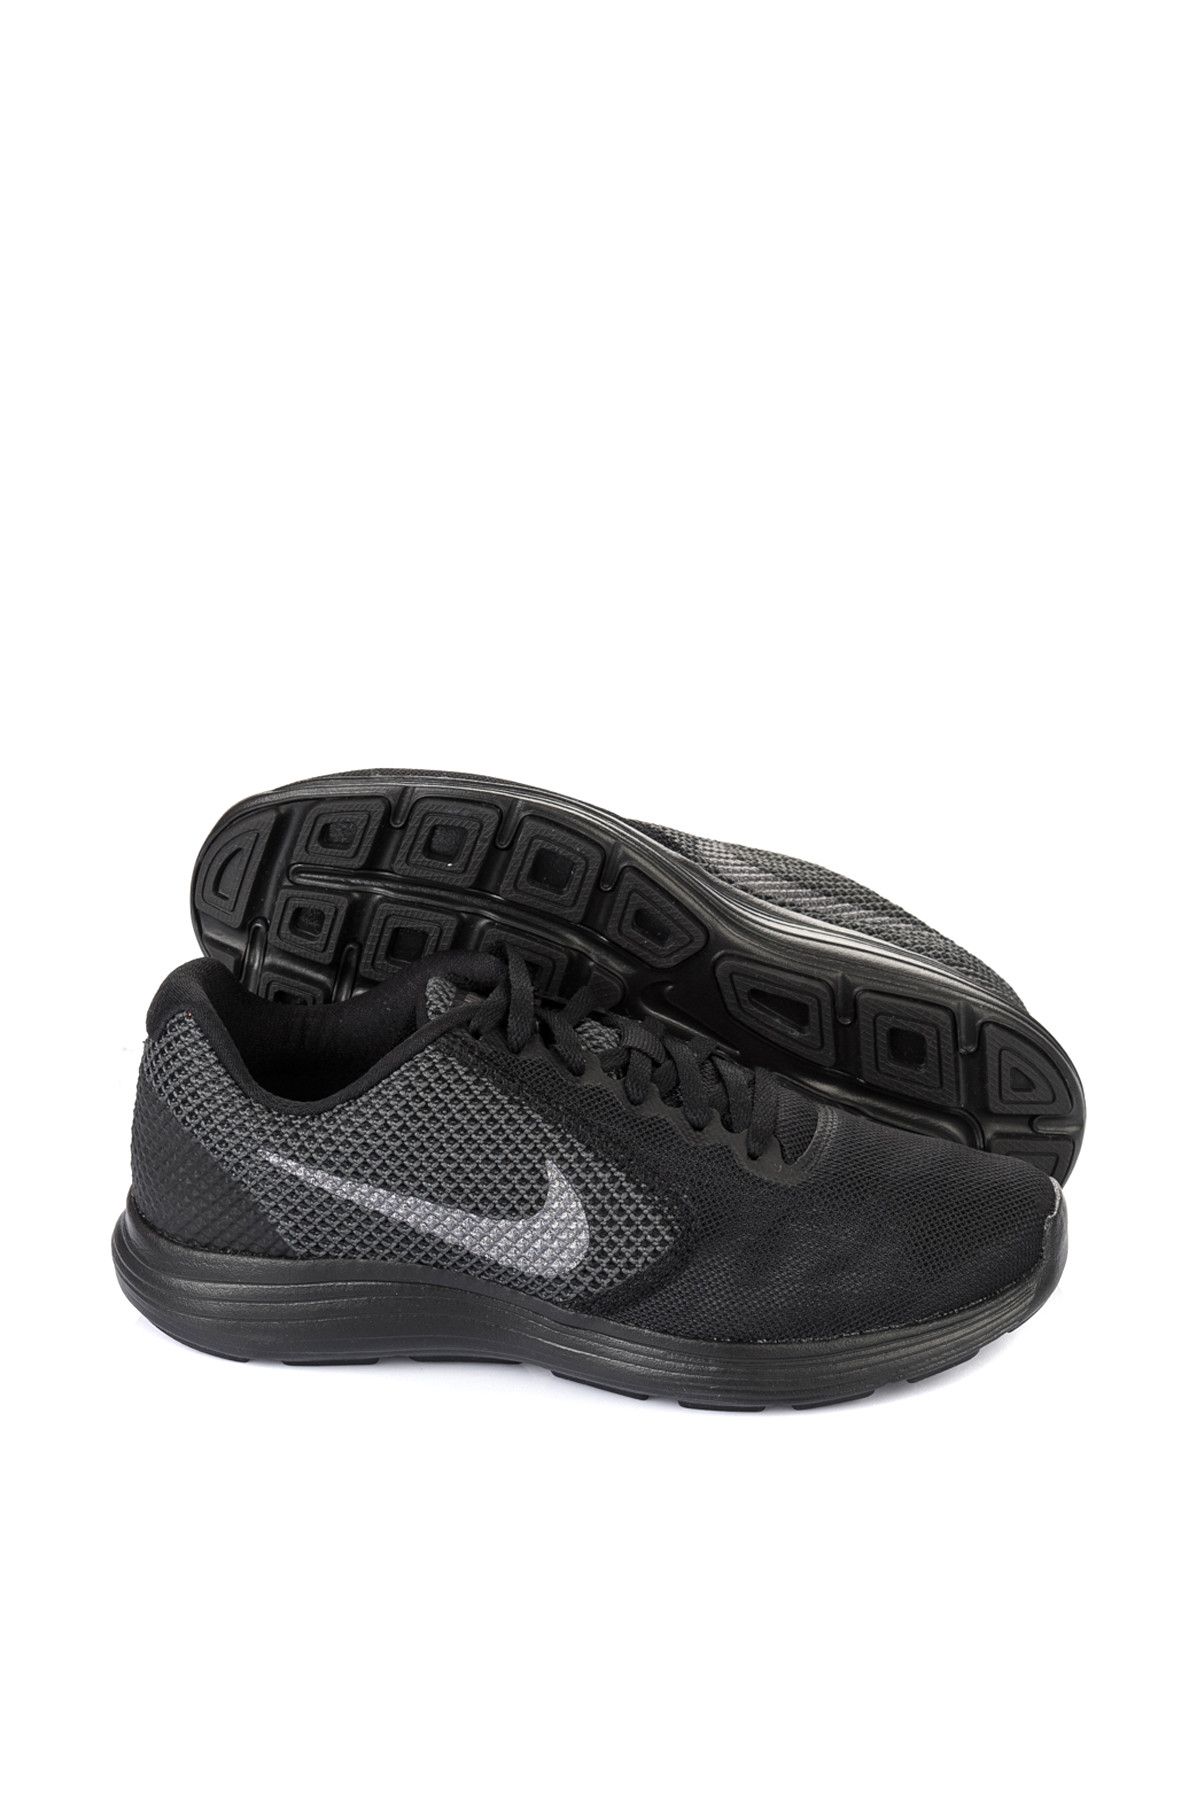 Nike Kadın Spor Ayakkabı - Revolution 3 - 819303-015